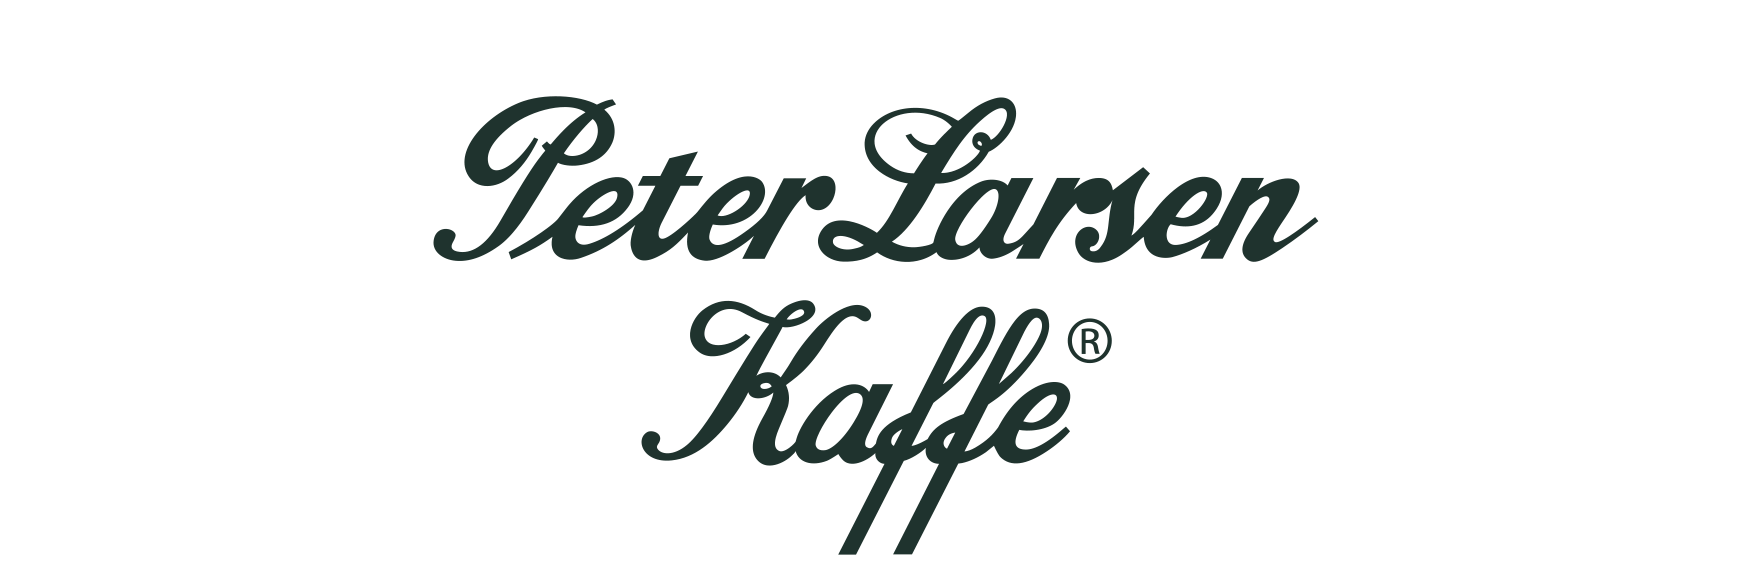 Peter Larsen Kaffe A/S